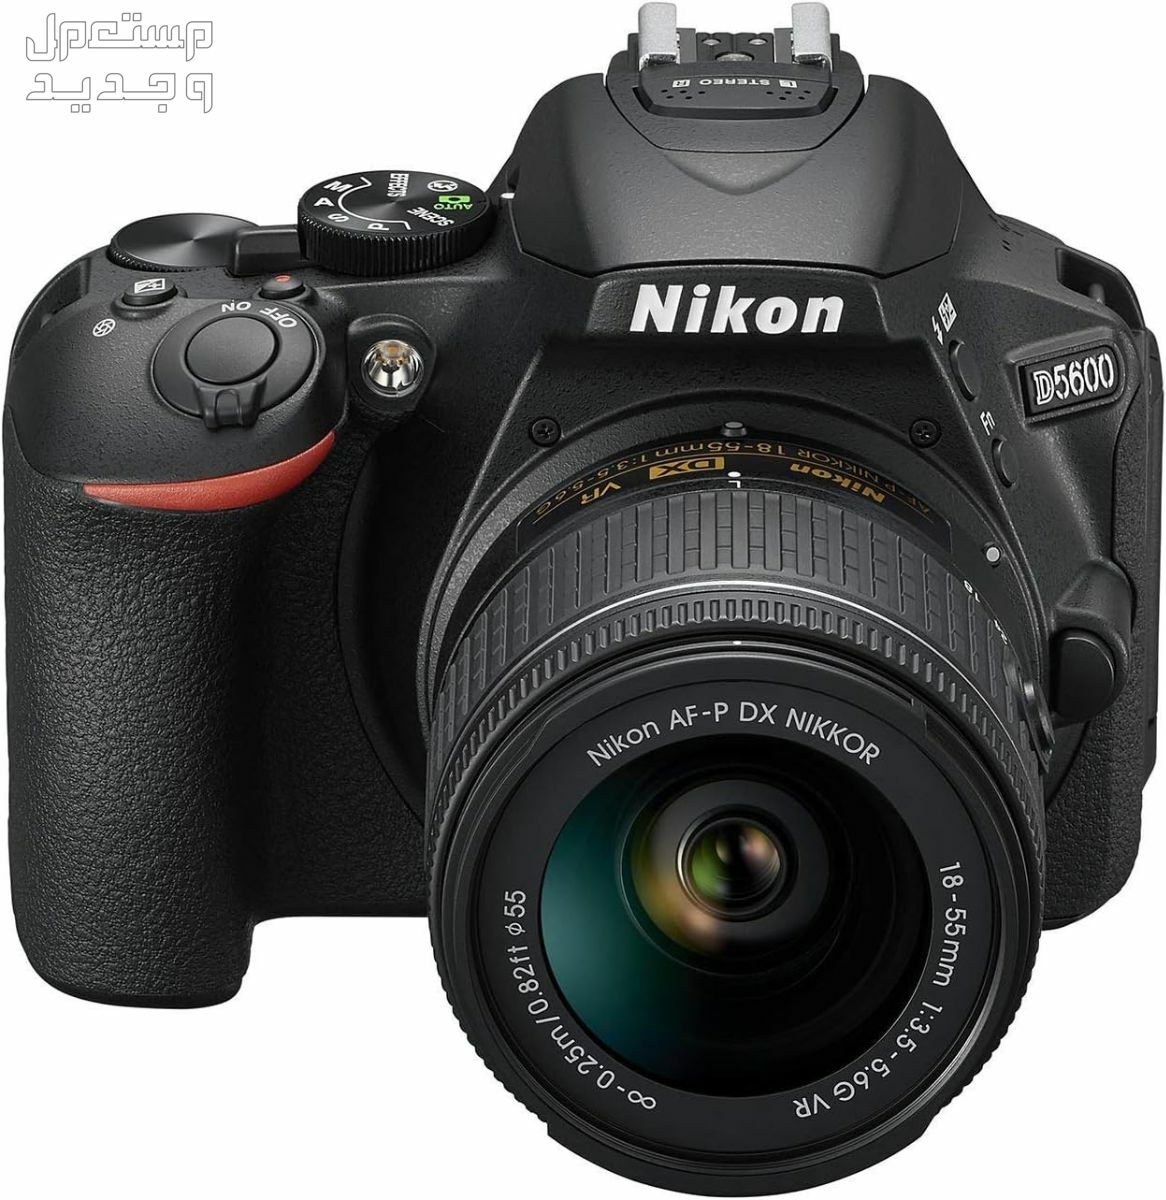 10 كاميرات تصوير ماركات عالمية بأسعار رخيصة في مصر سعر كاميرا Nikon D5600